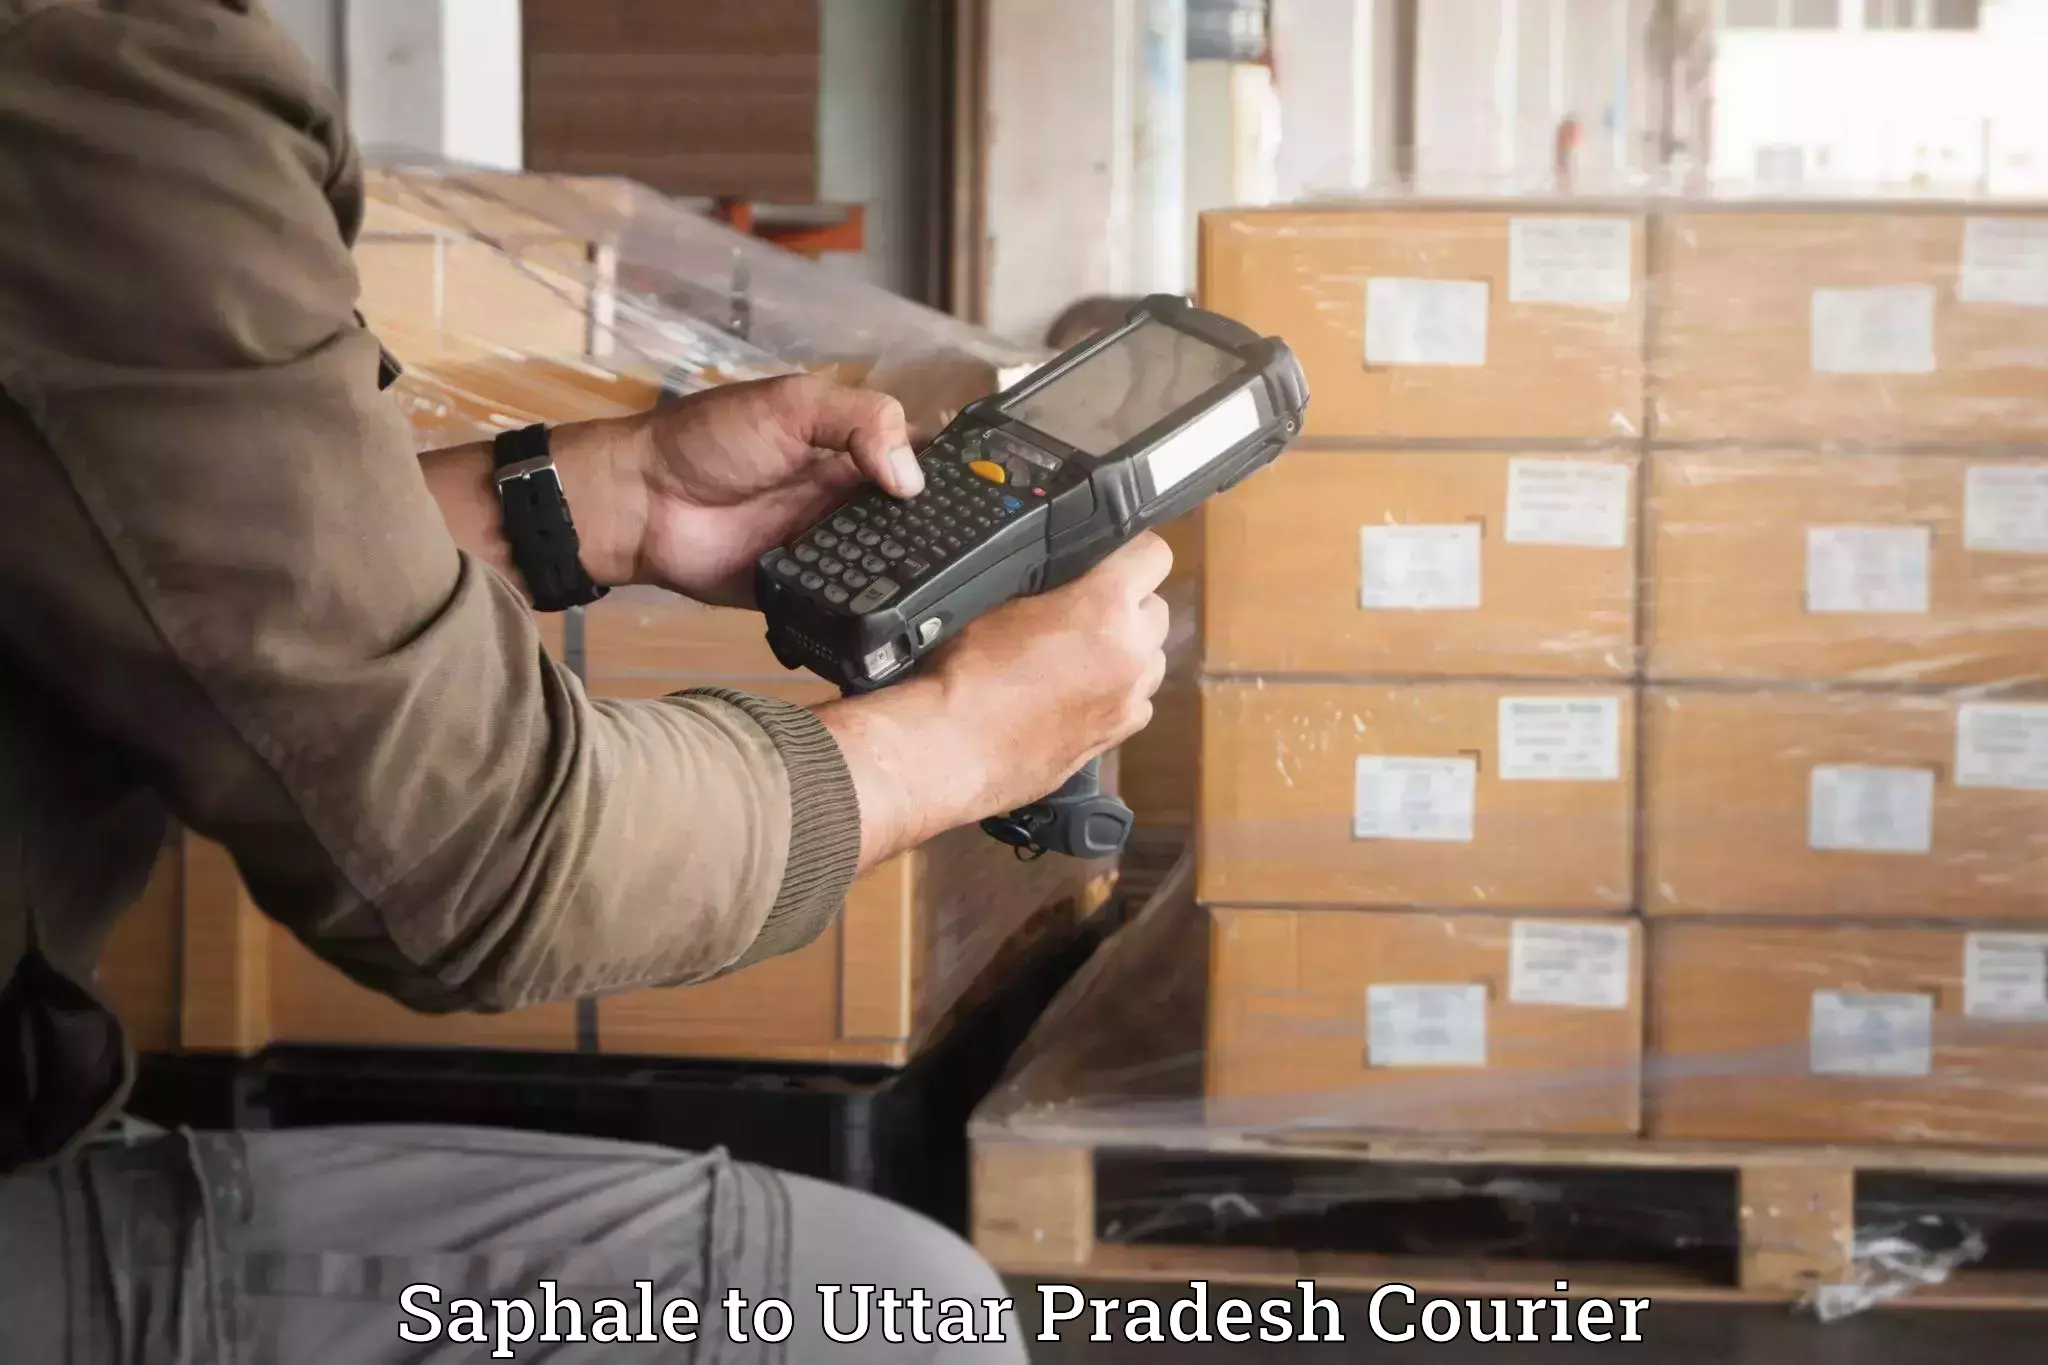 Door-to-door baggage service Saphale to Hapur